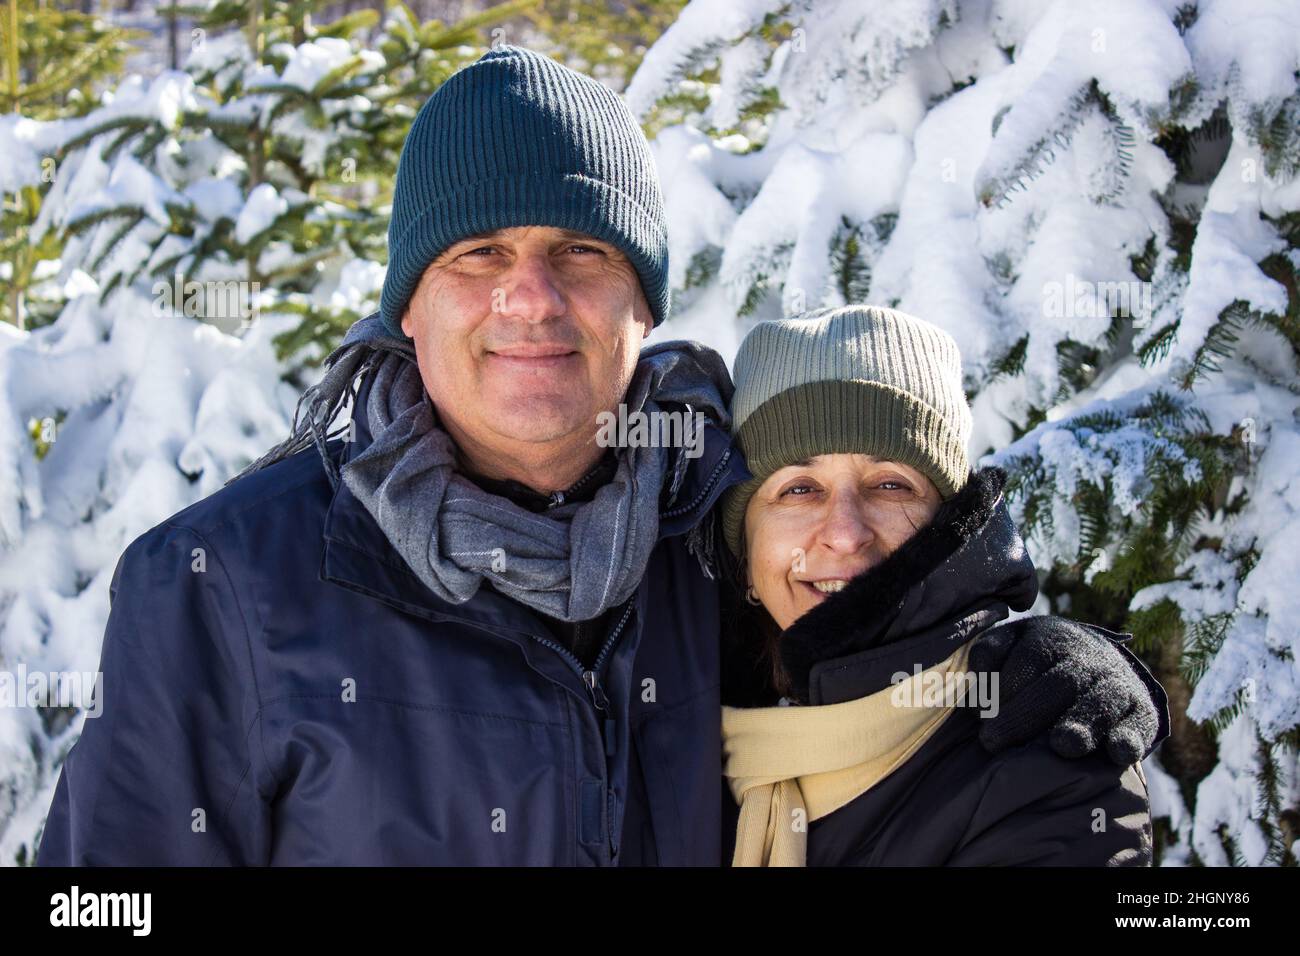 Ehepaar mittleren Alters in Winterkleidung umarmt sich gegenseitig und zeigt Zuneigung. Kaukasisches Paar lächelt zusammen zwischen Schnee und Wald. Candi Stockfoto